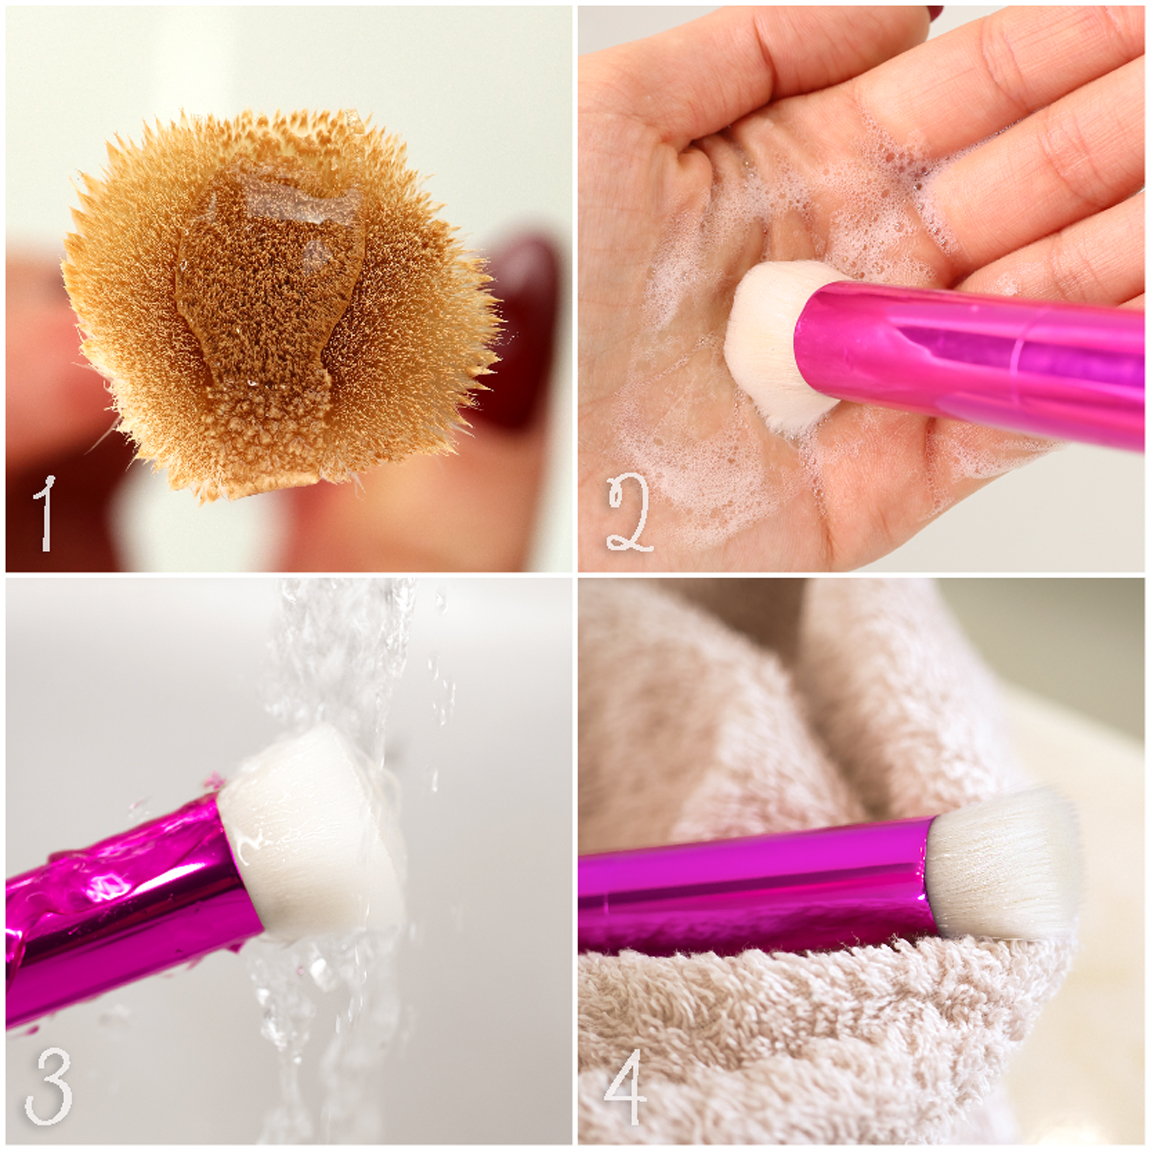 Lavare regolarmente i pennelli per il trucco riduce il rischio di infezioni  e acne